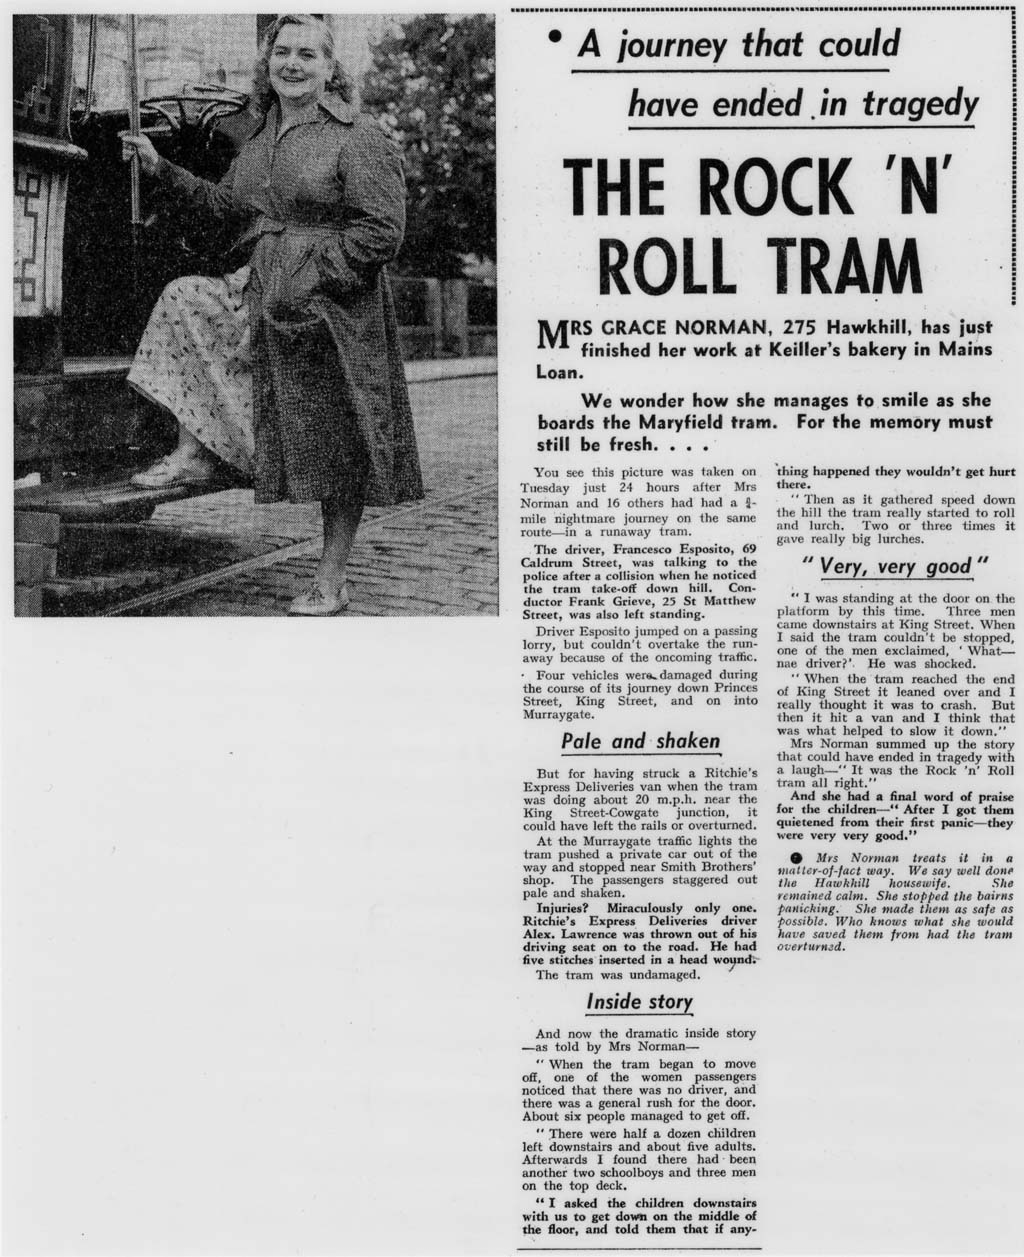 The Rock 'N' Roll Tram